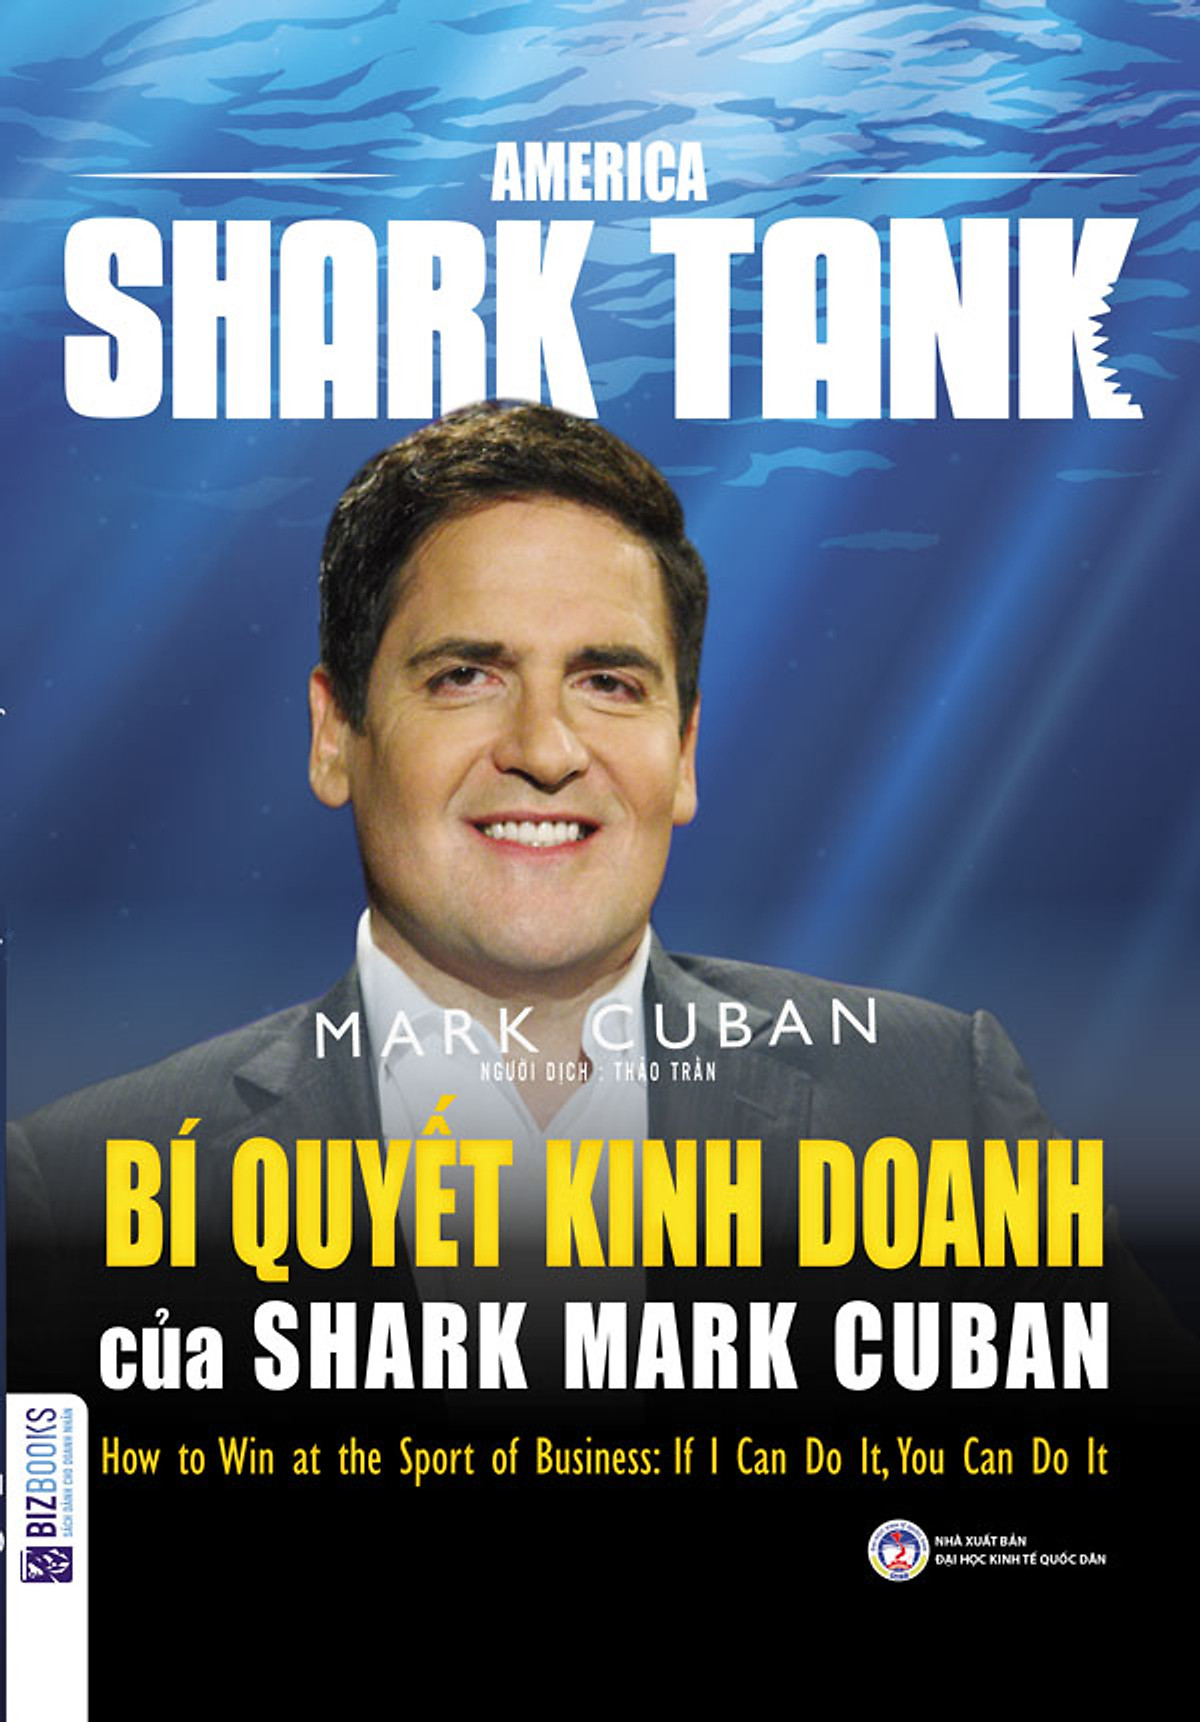 BIZBOOKS - Combo Trọn Bộ 6 Cuốn America Shark Tank – Huấn Luyện Kinh Doanh, Đánh Thức Bản Năng “Cá Mập” Trong Bạn Cùng Các Cố Vấn Đỉnh Cao - MinhAnBooks